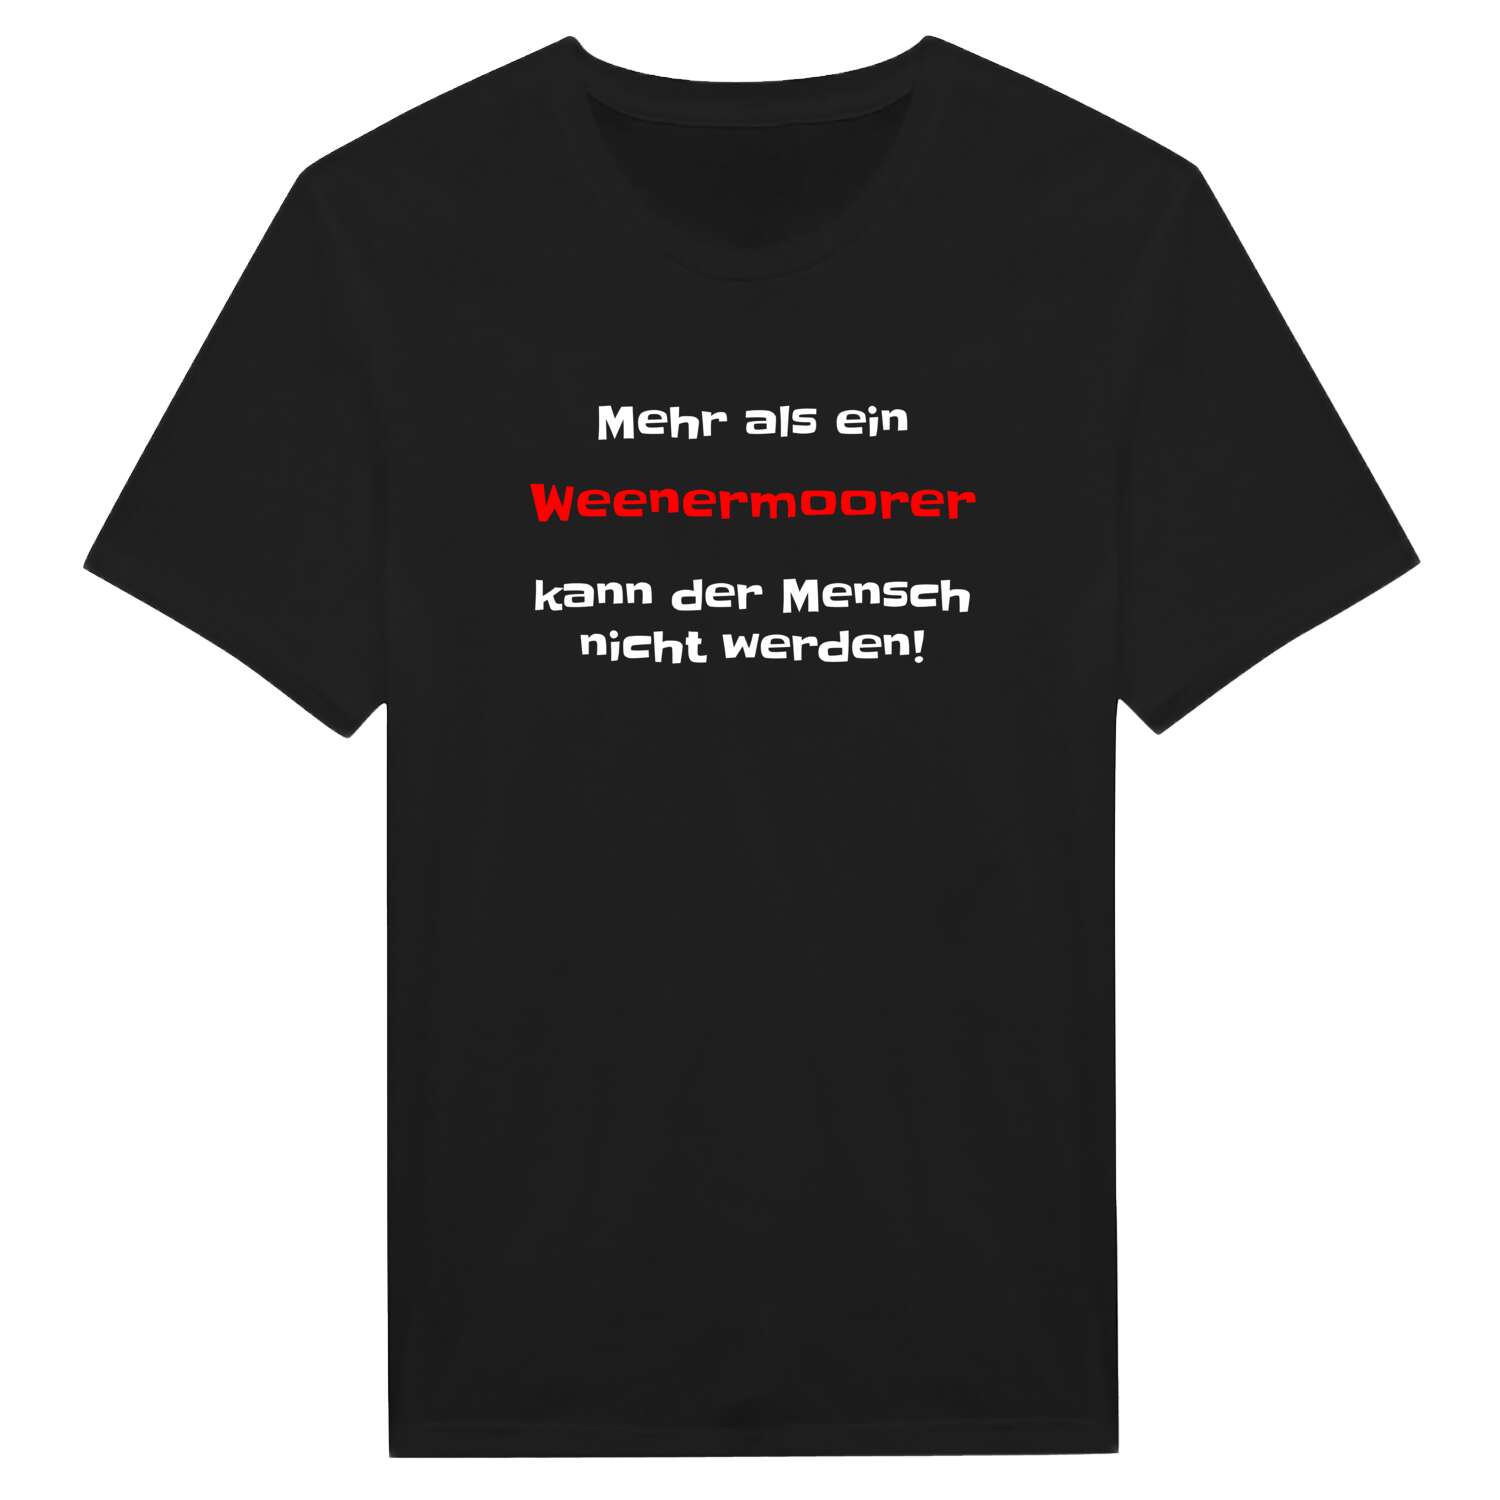 Weenermoor T-Shirt »Mehr als ein«